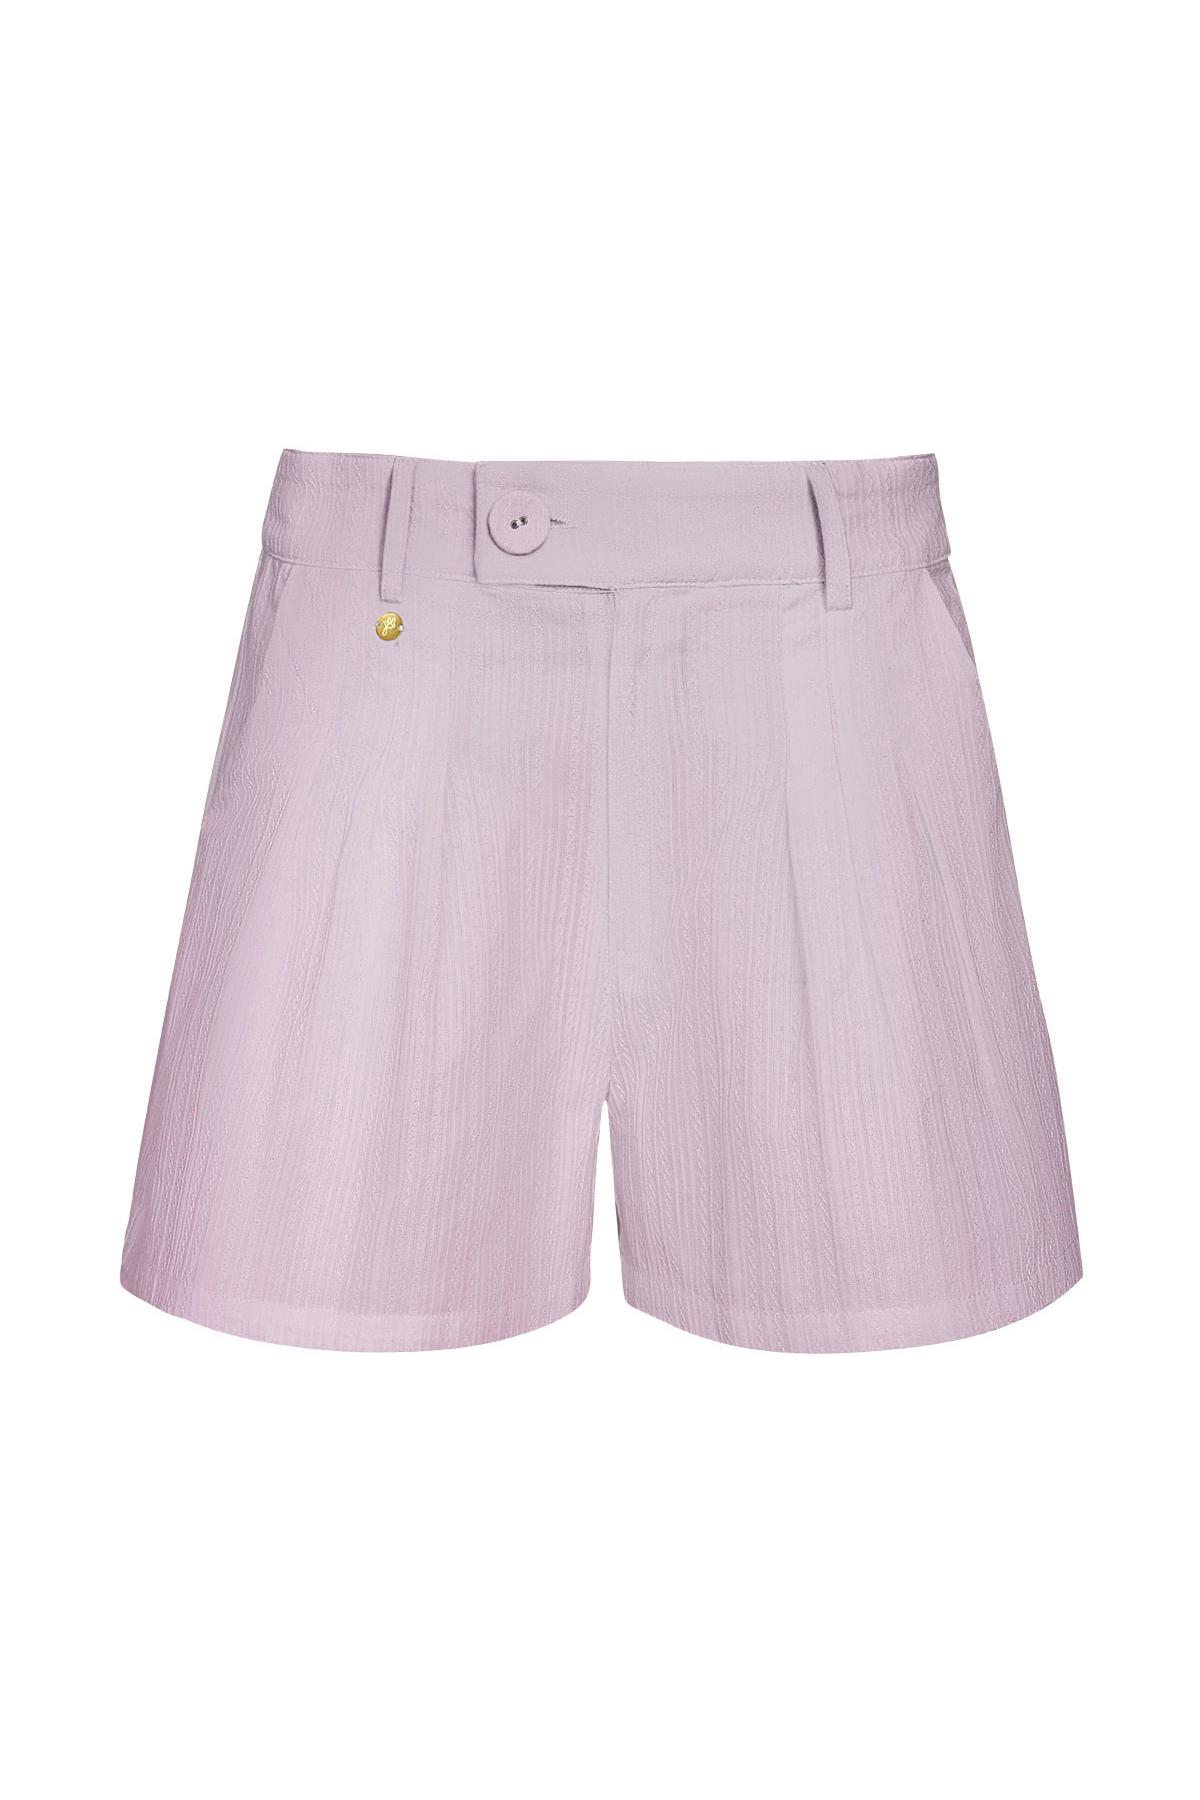 Dettaglio bottoni pantaloncini - lilla Lilac M 